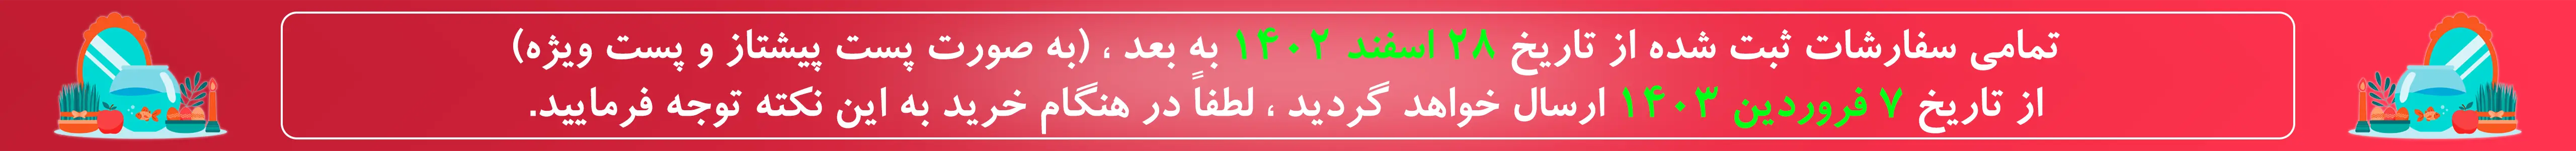 حراج نوروز صنایع دستی و کتاب 1403